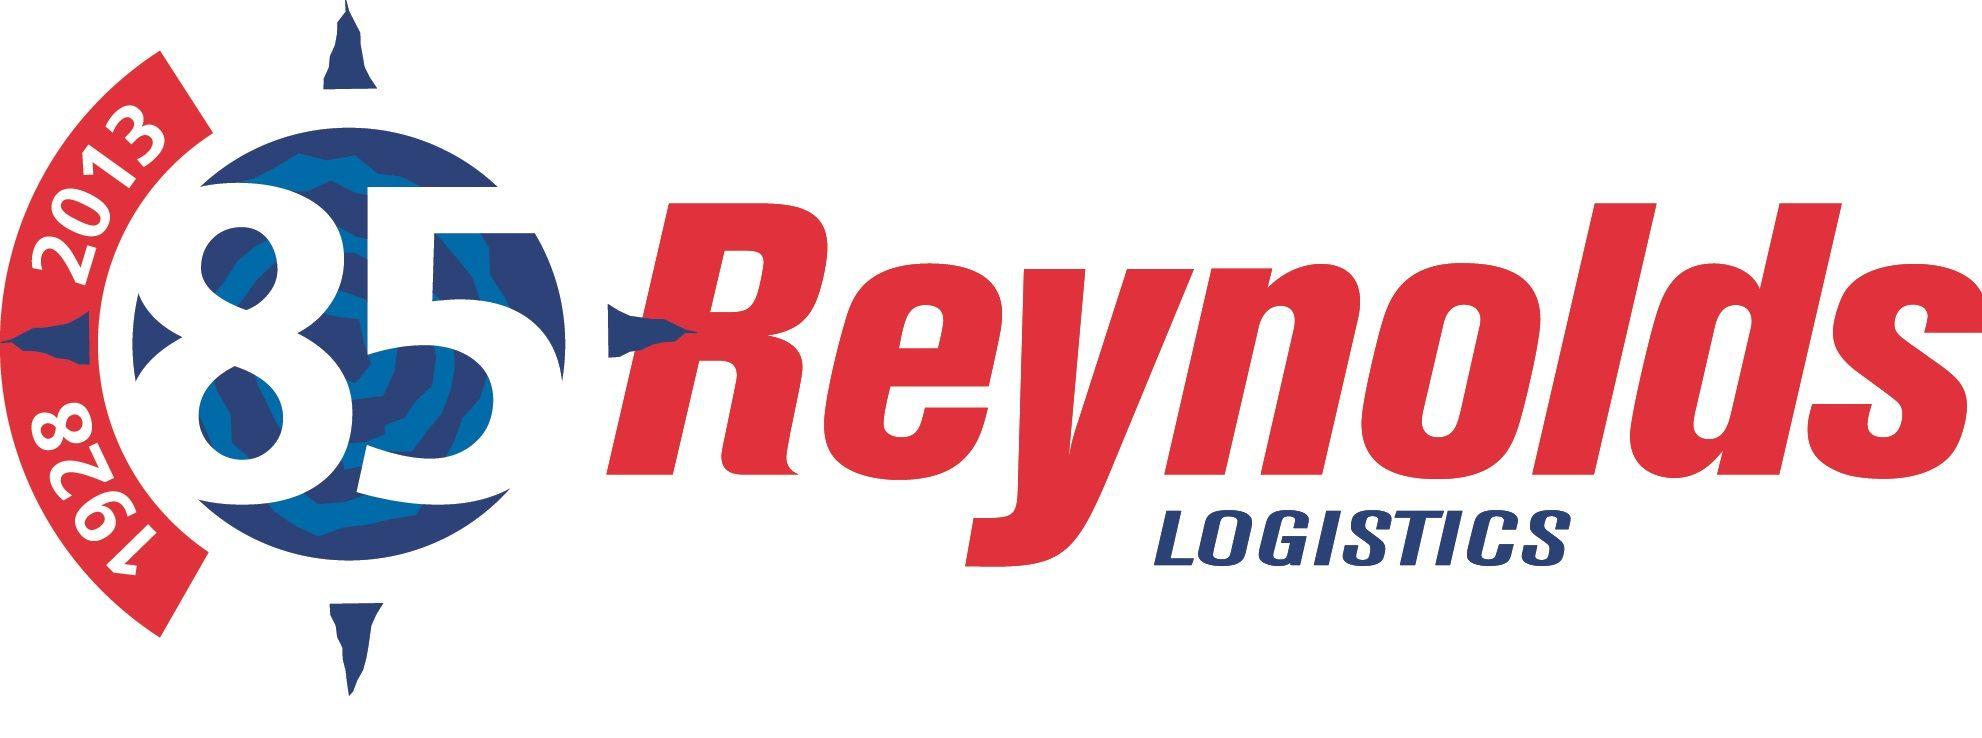 Leading Logistics Company Logo - Irish & UK Transport Company Reynolds Logistics celebrates 85 years ...